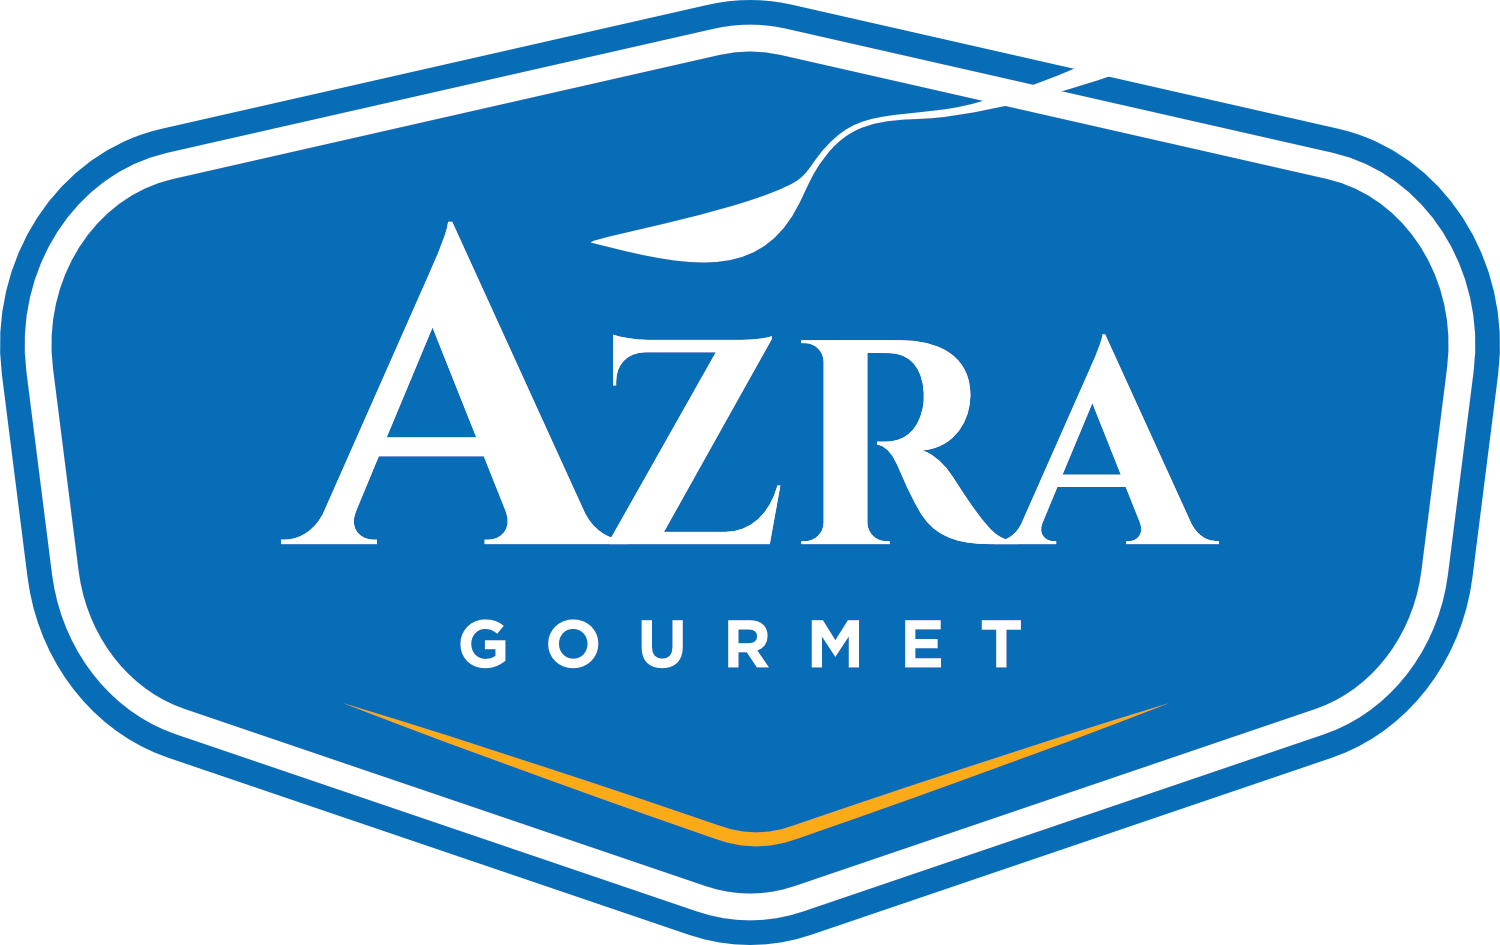 AZRA Gourmet